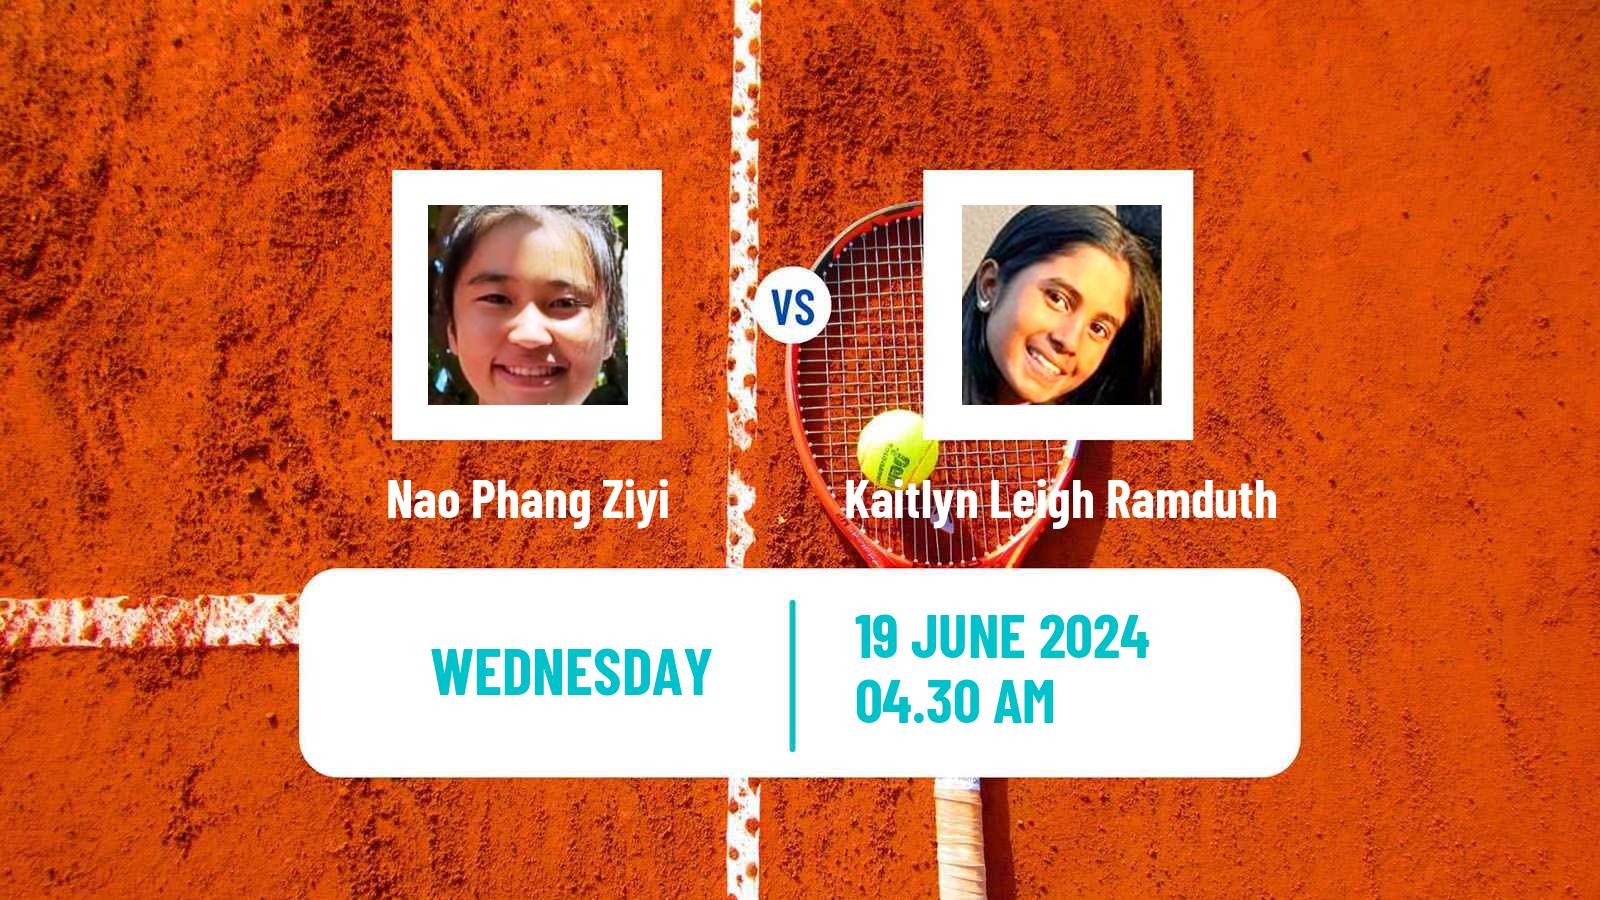 Tennis ITF W15 Hillcrest Women Nao Phang Ziyi - Kaitlyn Leigh Ramduth